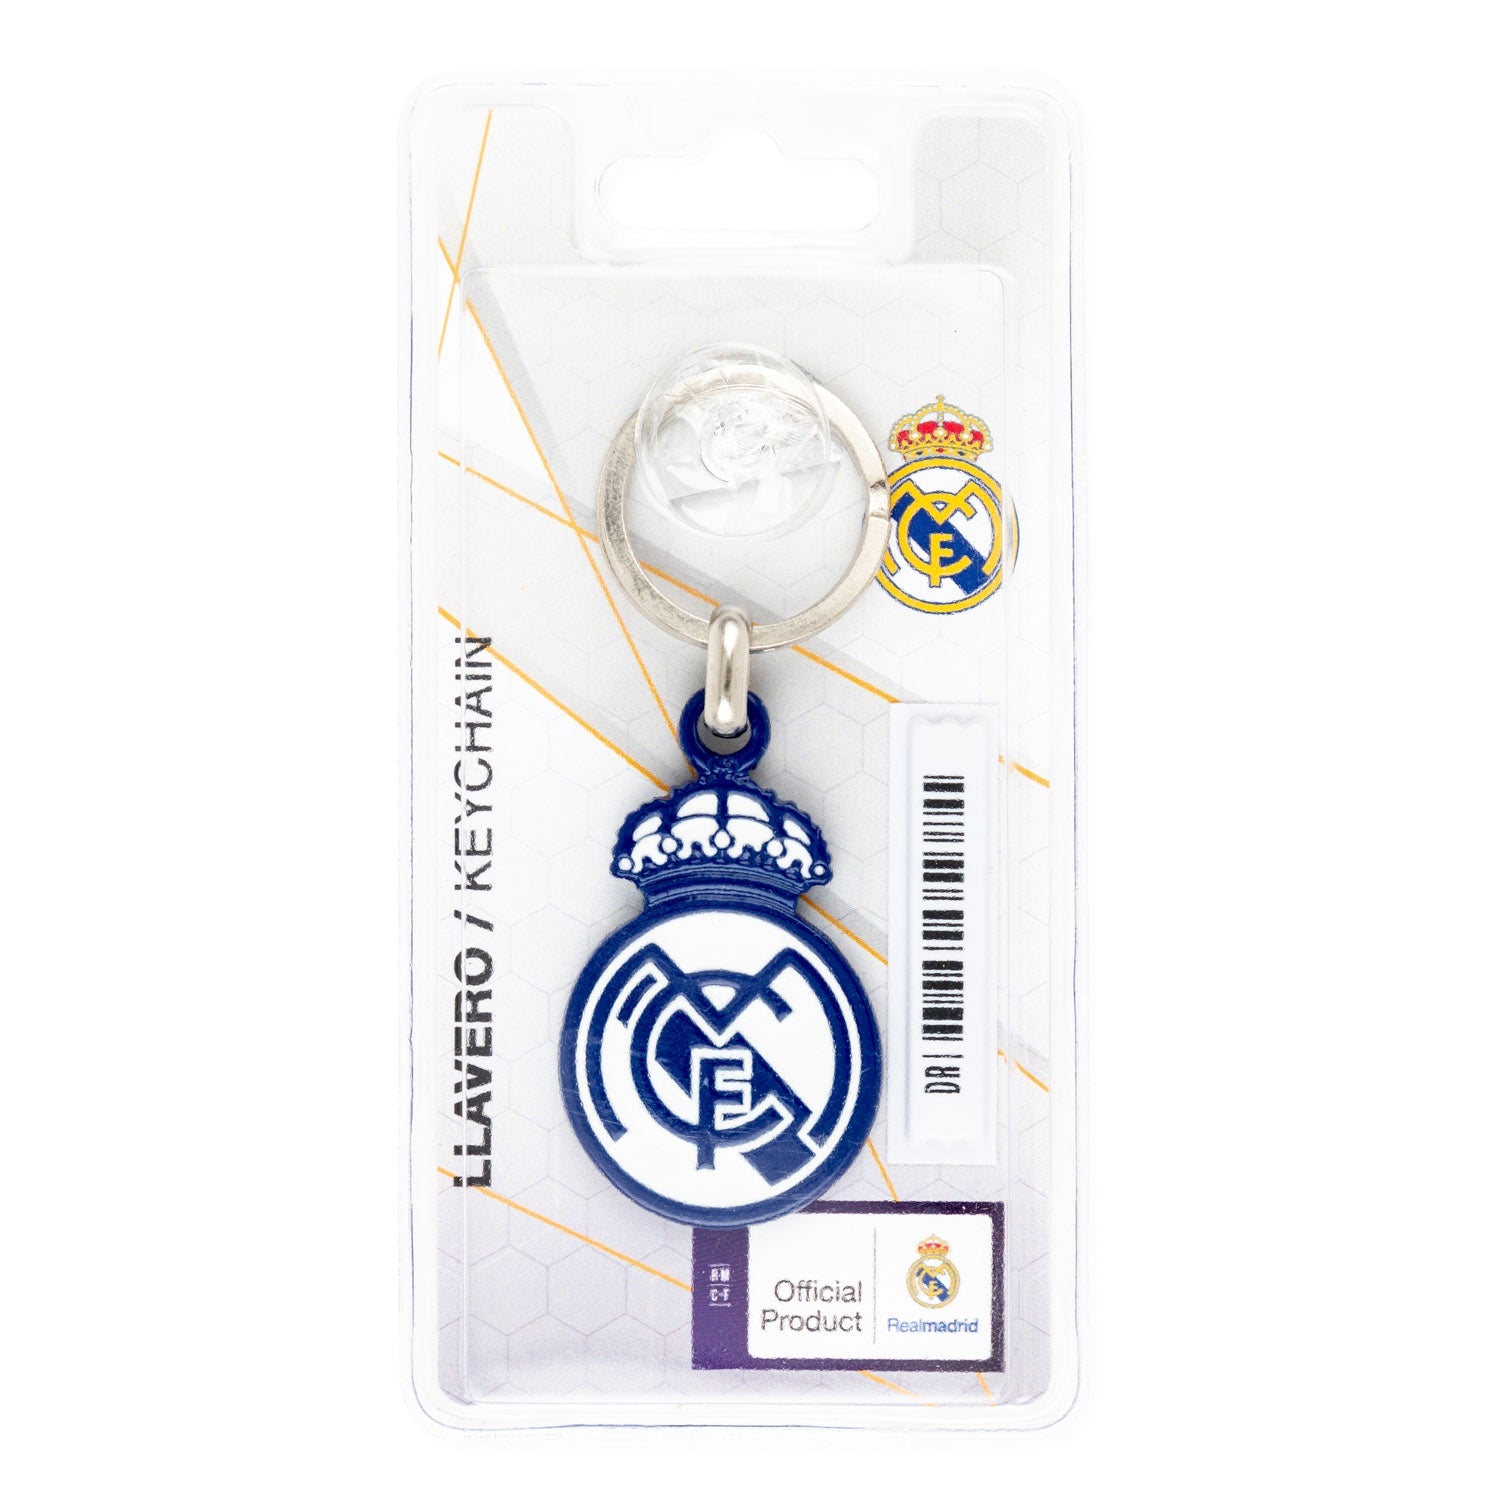 Real Madrid Blue Crest Keyring